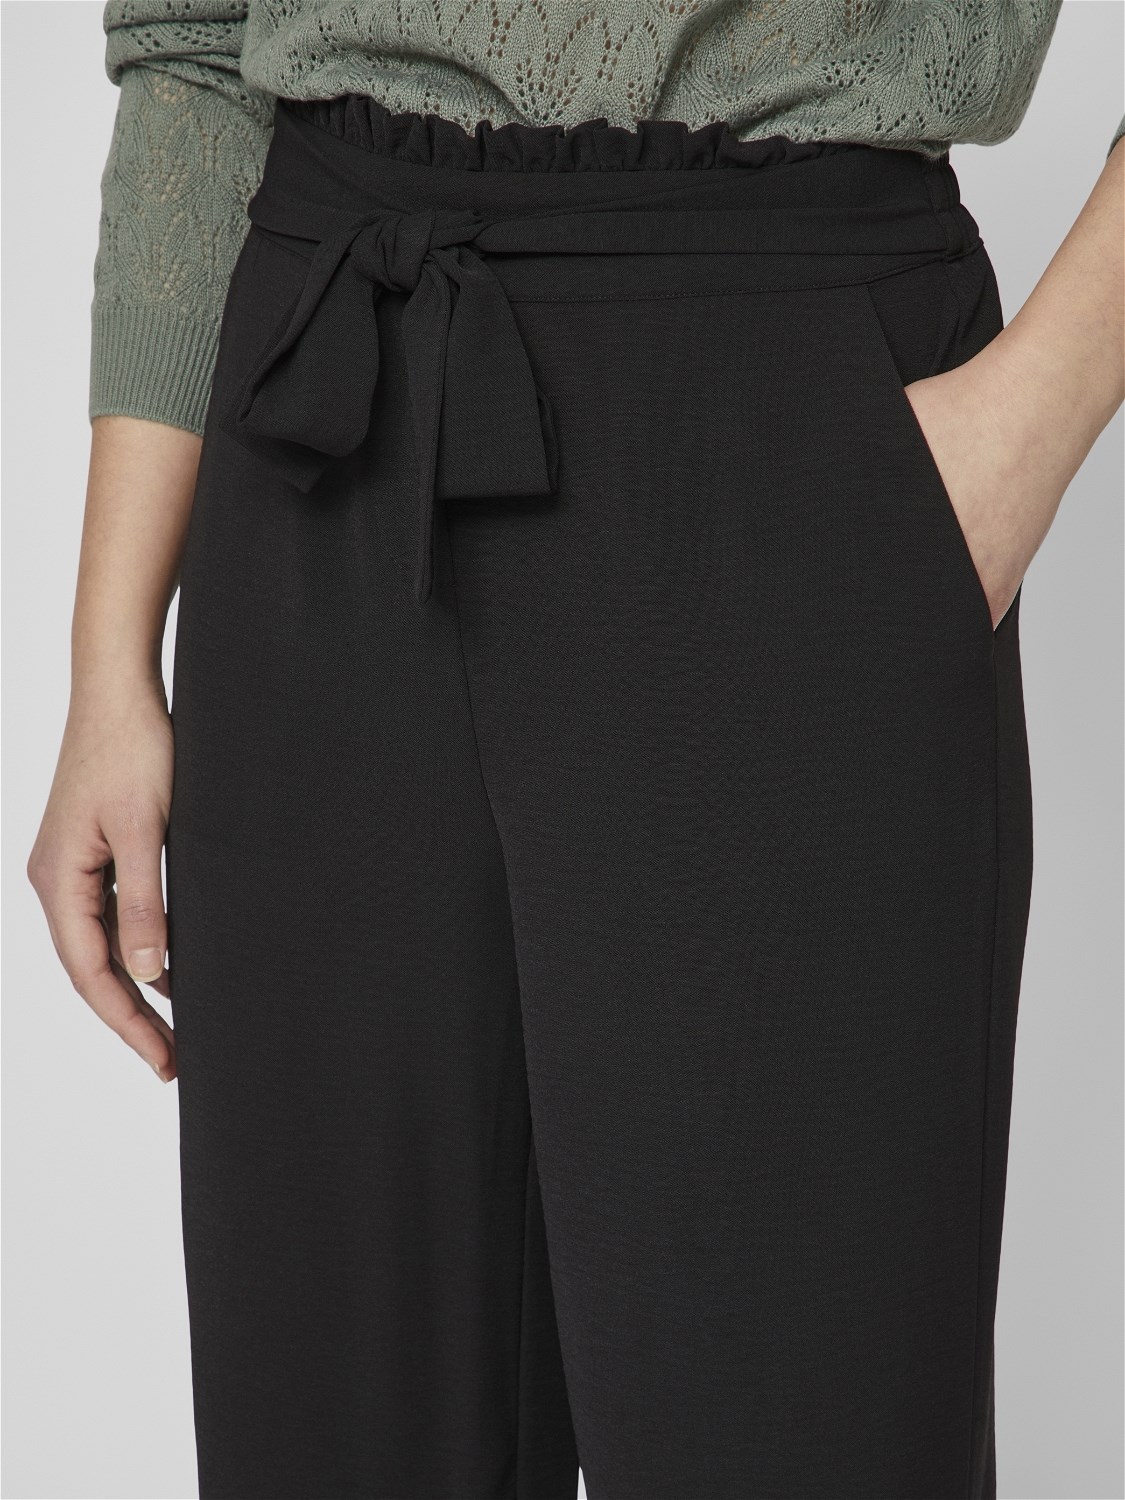 Pantalón Winnie culotte modelo 14092096 en color negro.